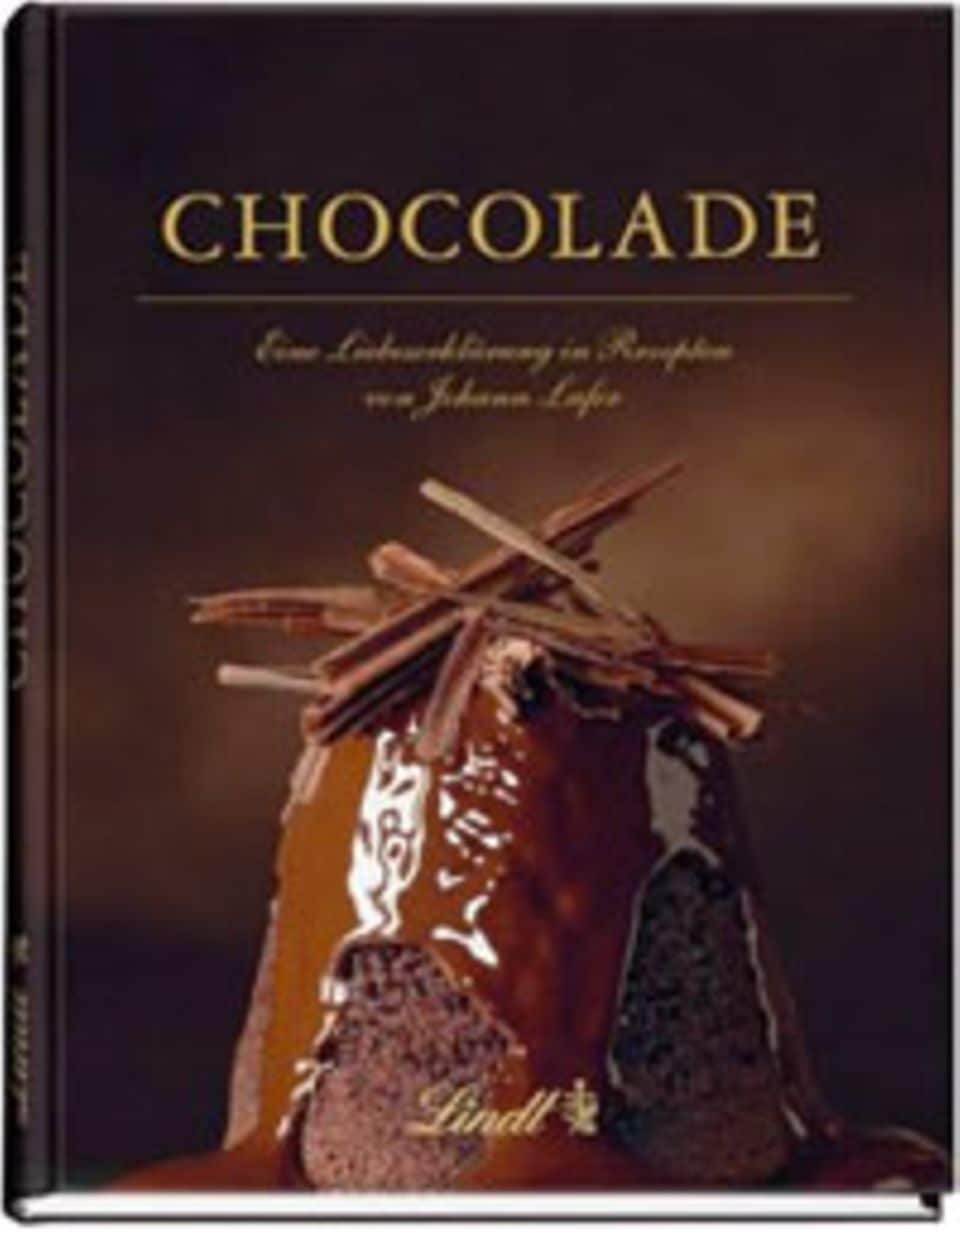 PROMOTION: Buch von Lindt & Johann Lafer: "Chocolade - Eine Liebeserklärung in Rezepten von Johann Lafer"